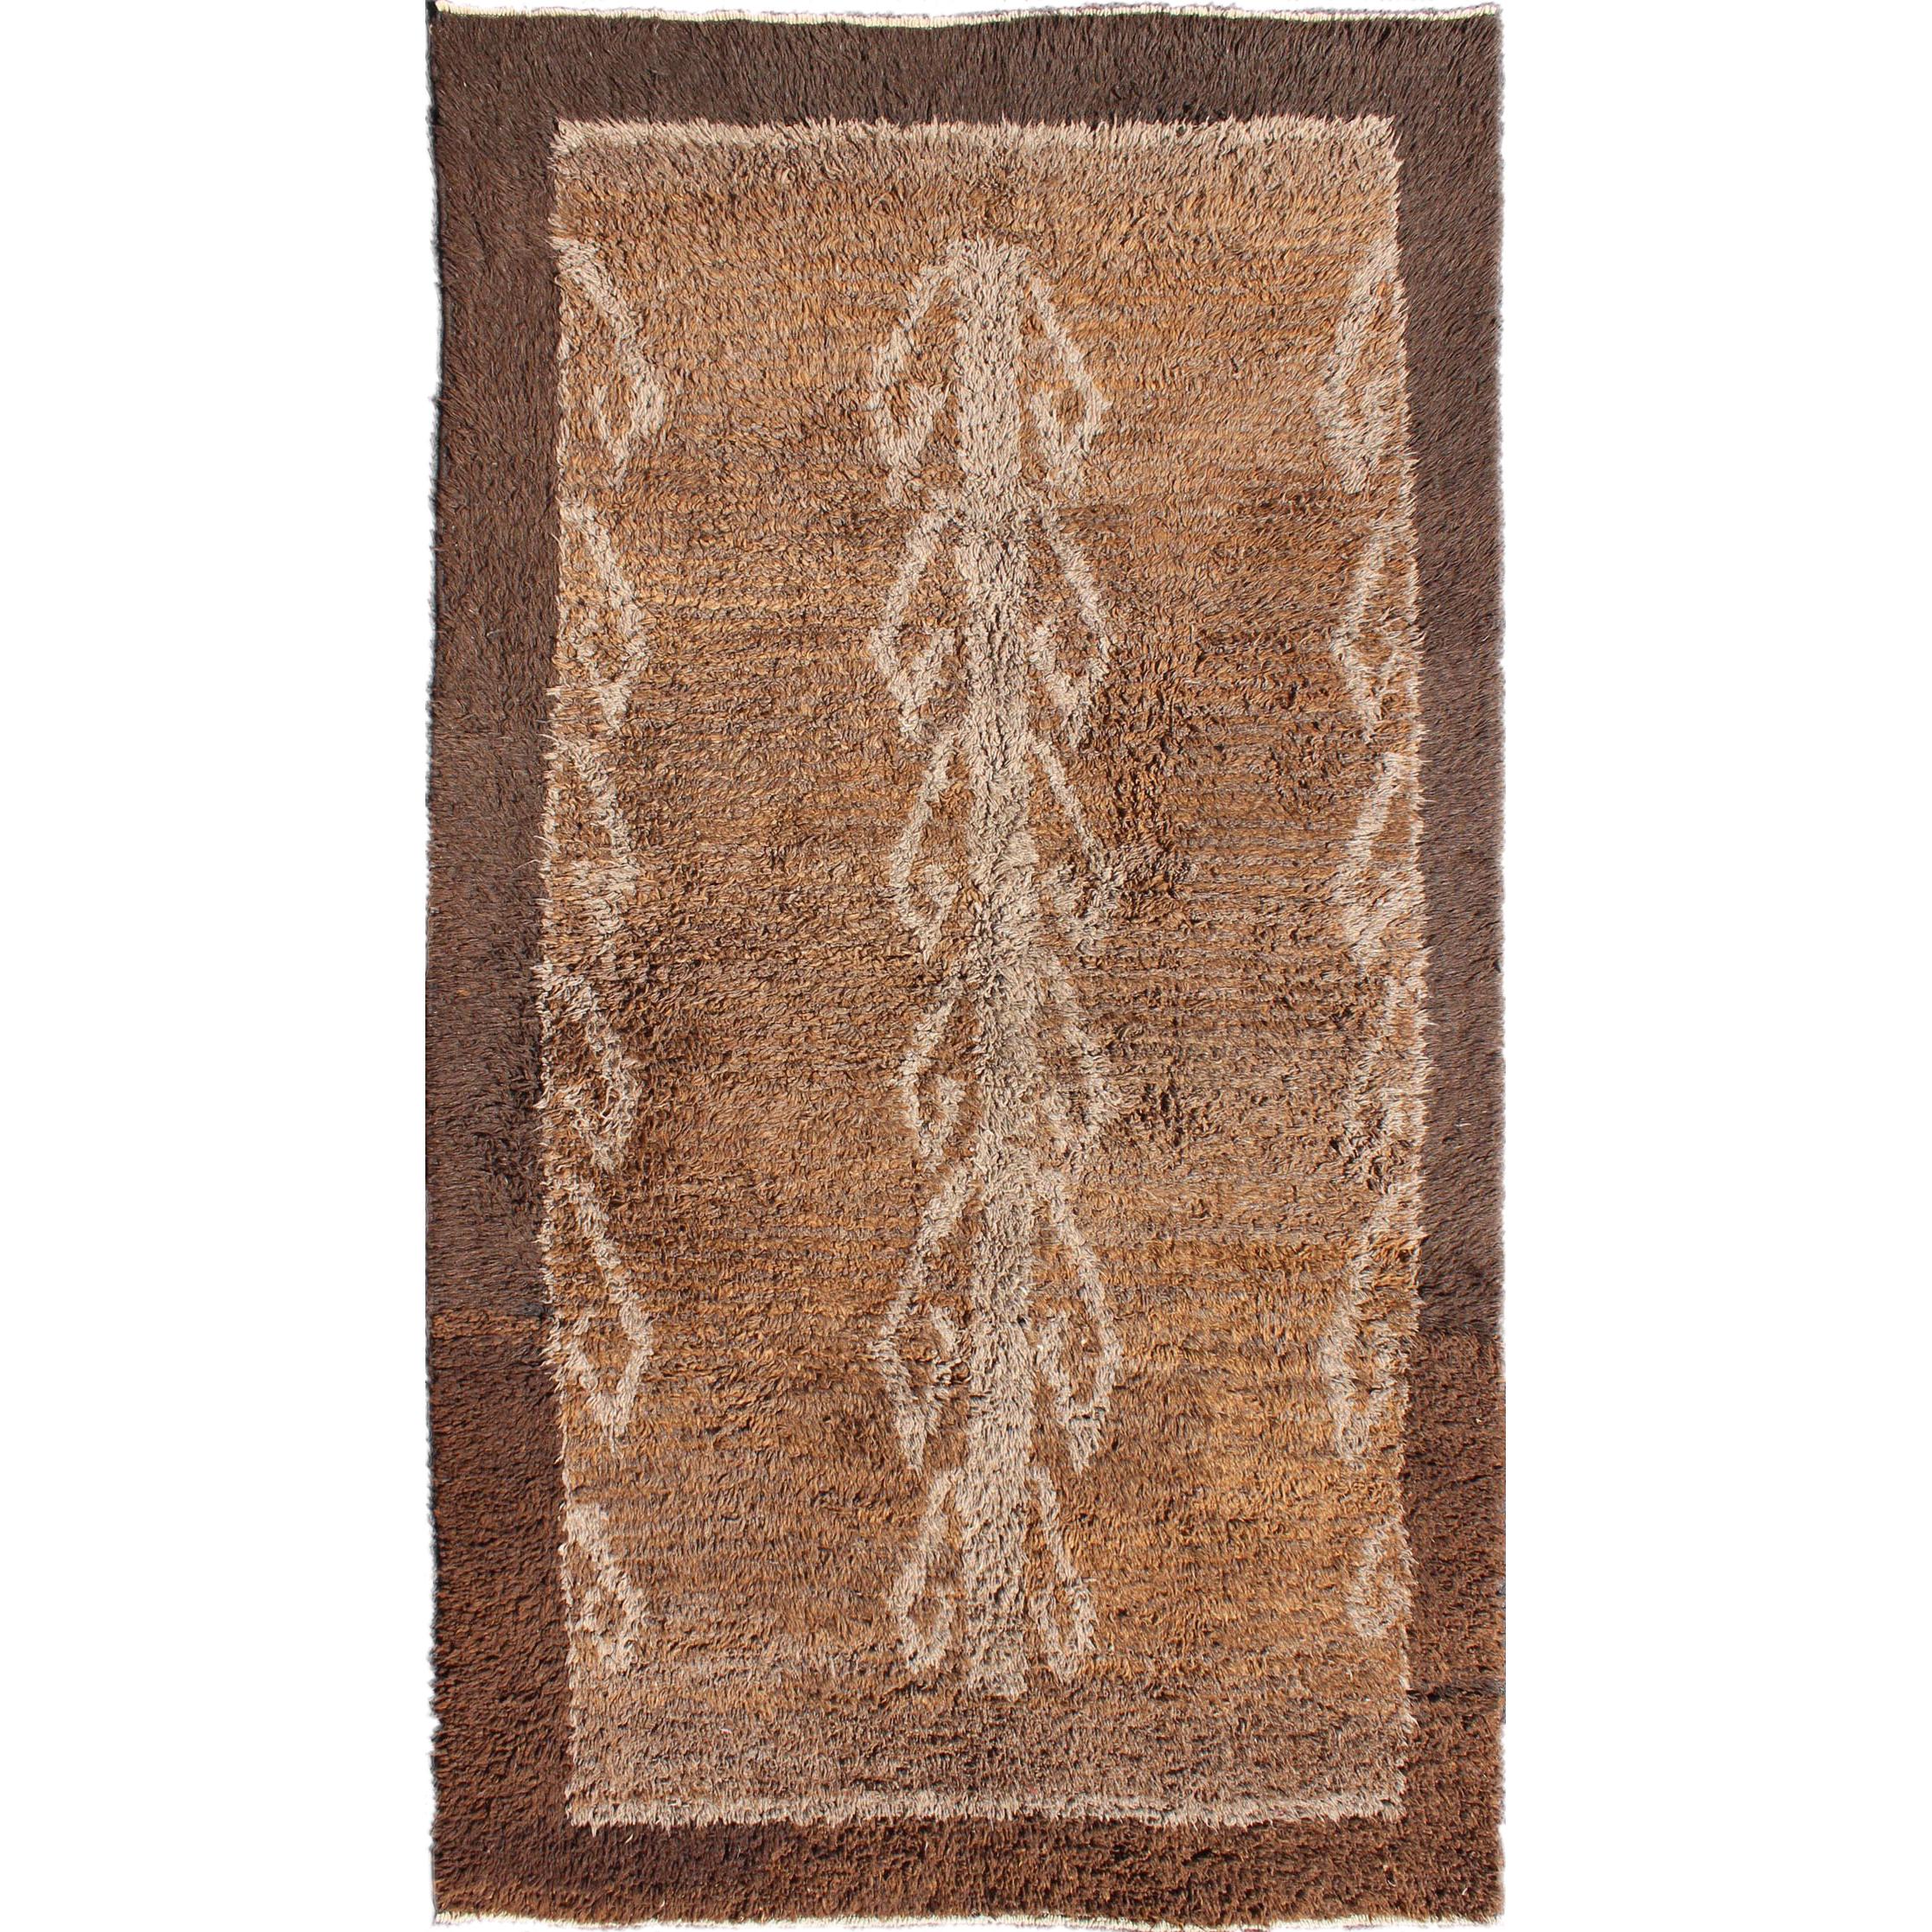 Natürlicher türkischer Tulu-Teppich aus Natur mit vertikalem Stammesmotiv in braunen Farbtönen